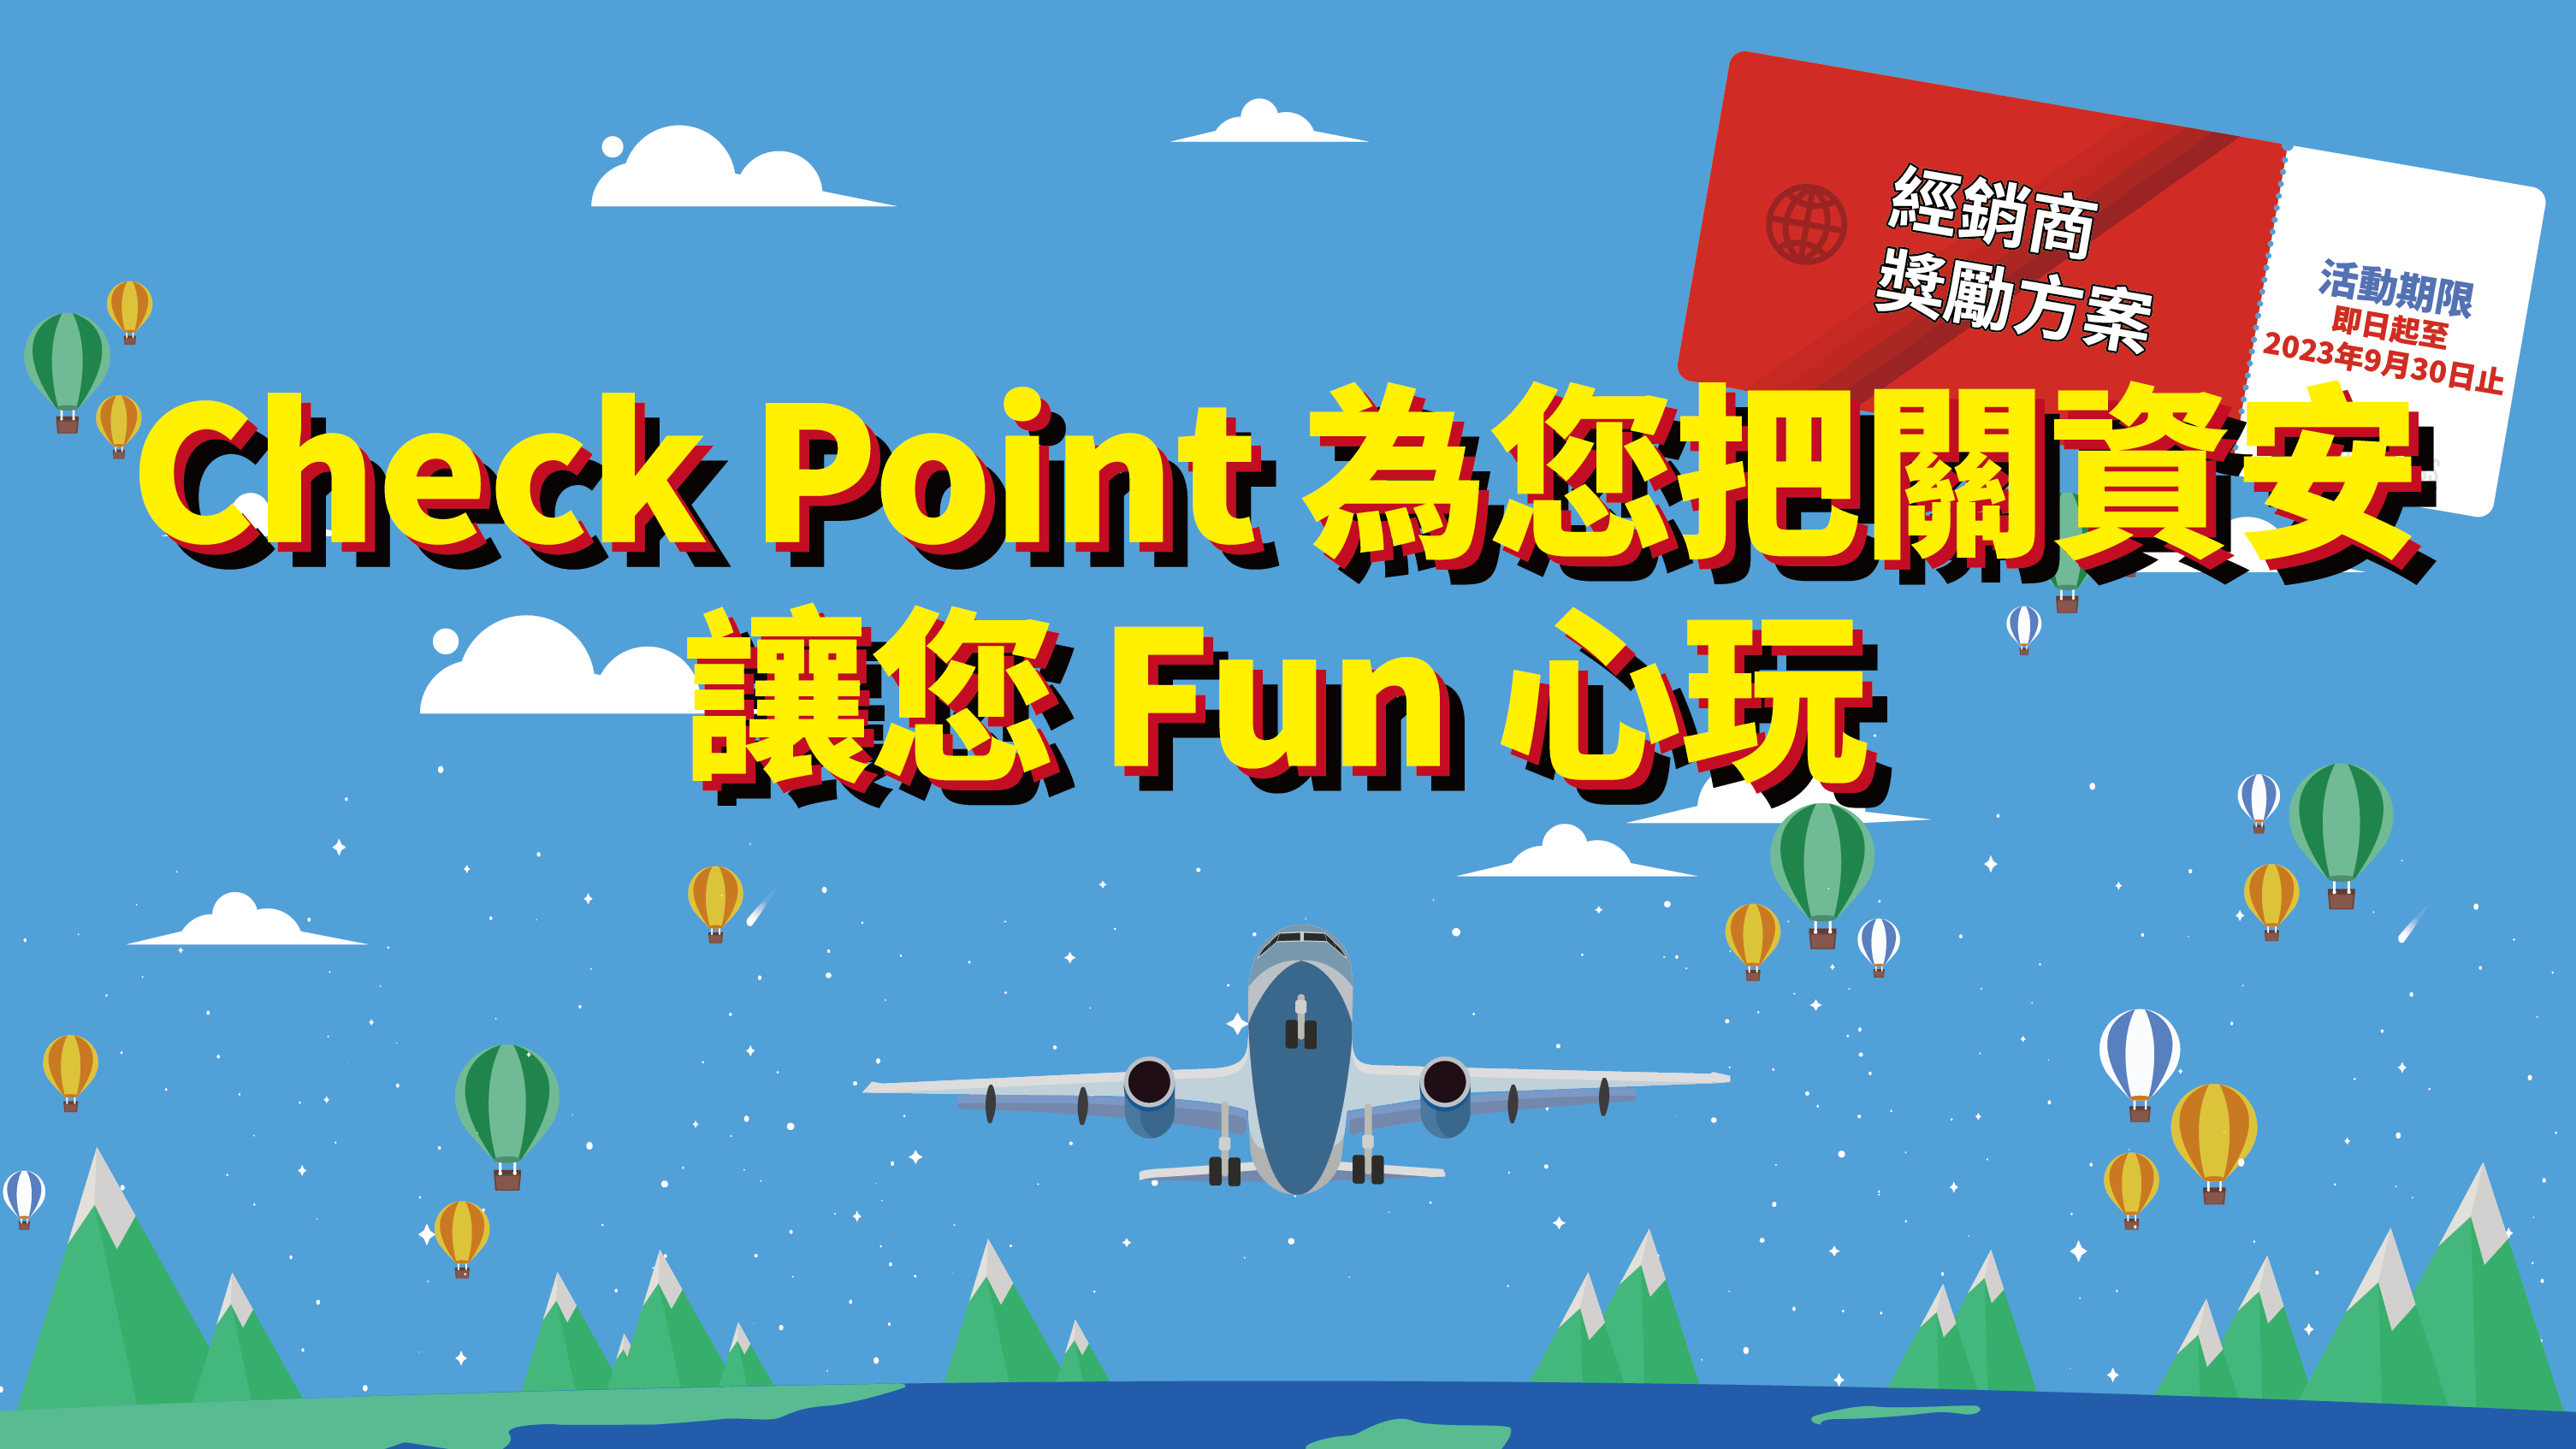 【經銷商專屬】Check Point 送您旅遊! 買 Quantum Spark 1800，送您「萬元旅遊金」，立即聯絡!